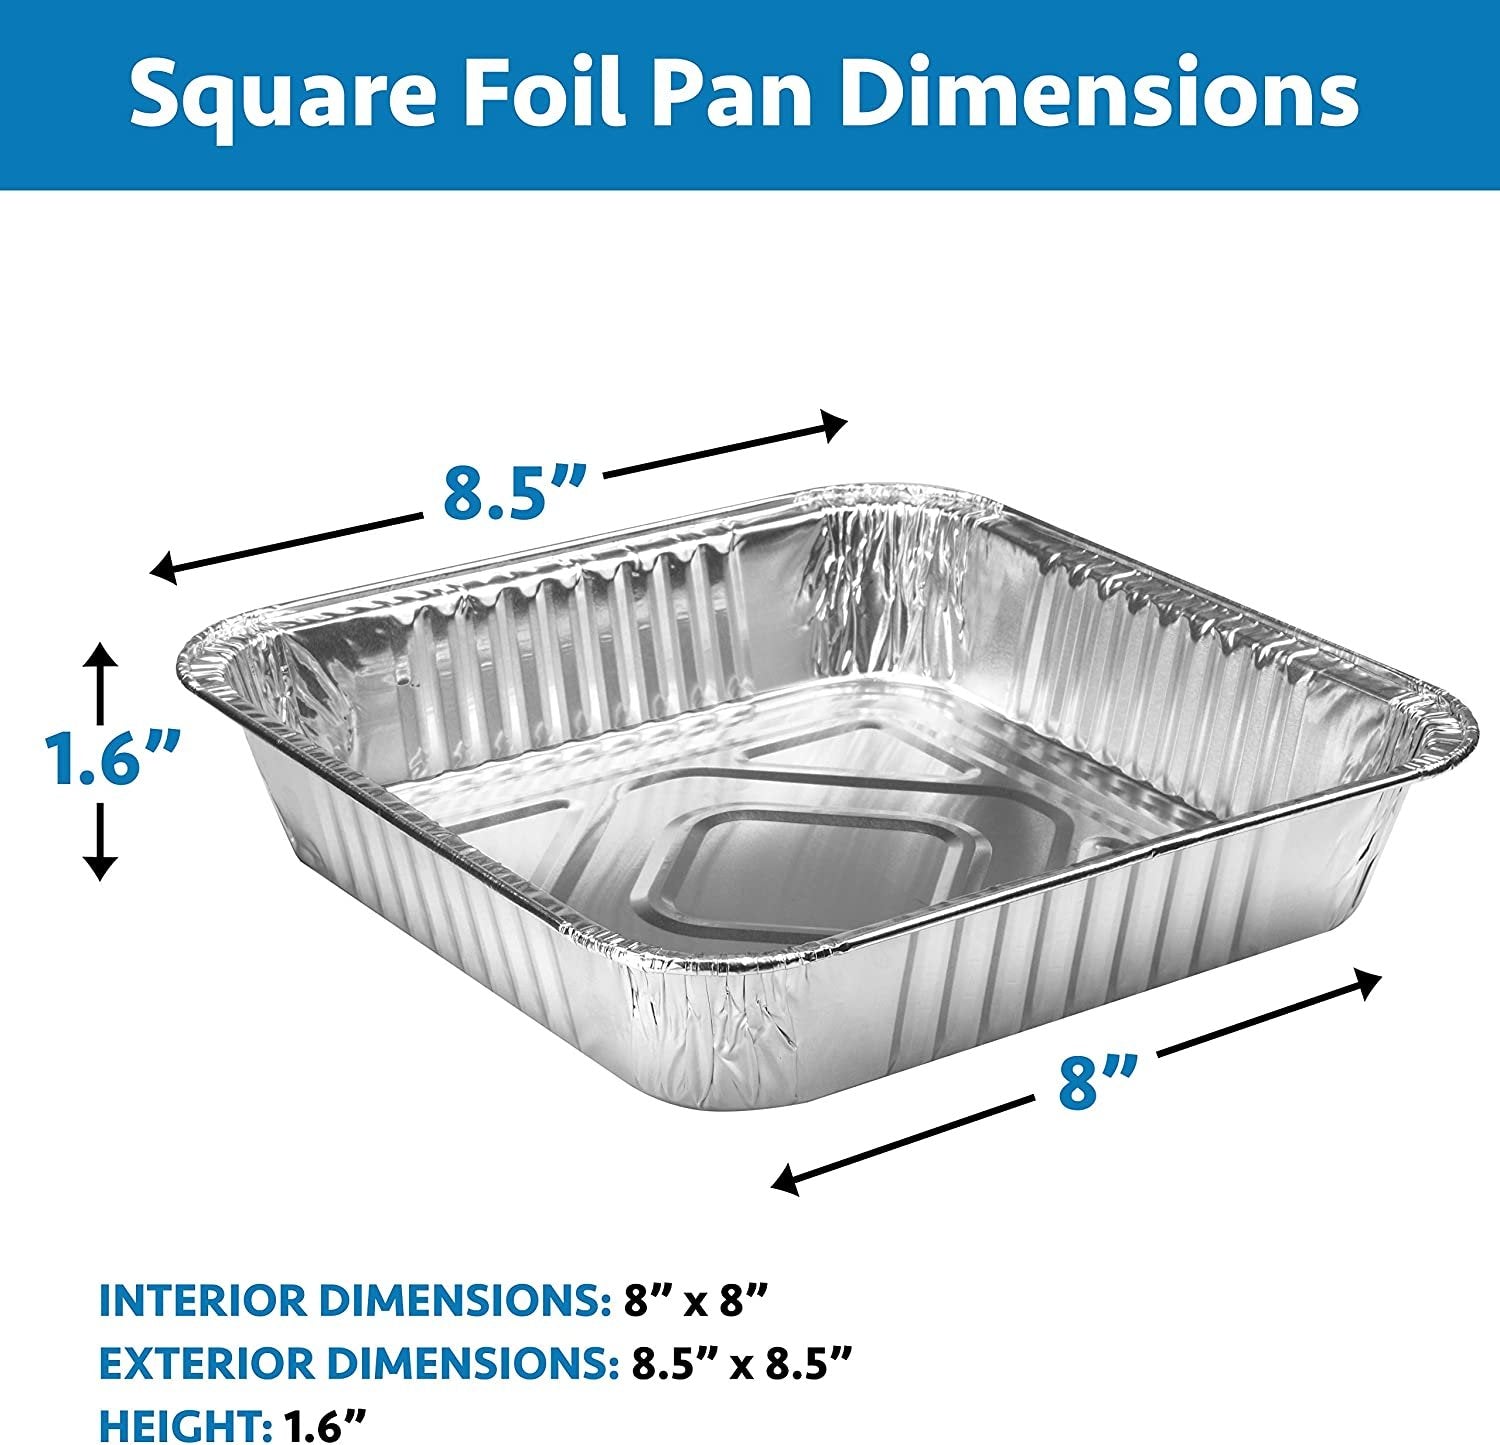 9X13 Half Size Aluminum Foil Pans Disposable 30 Pack Baking Pans